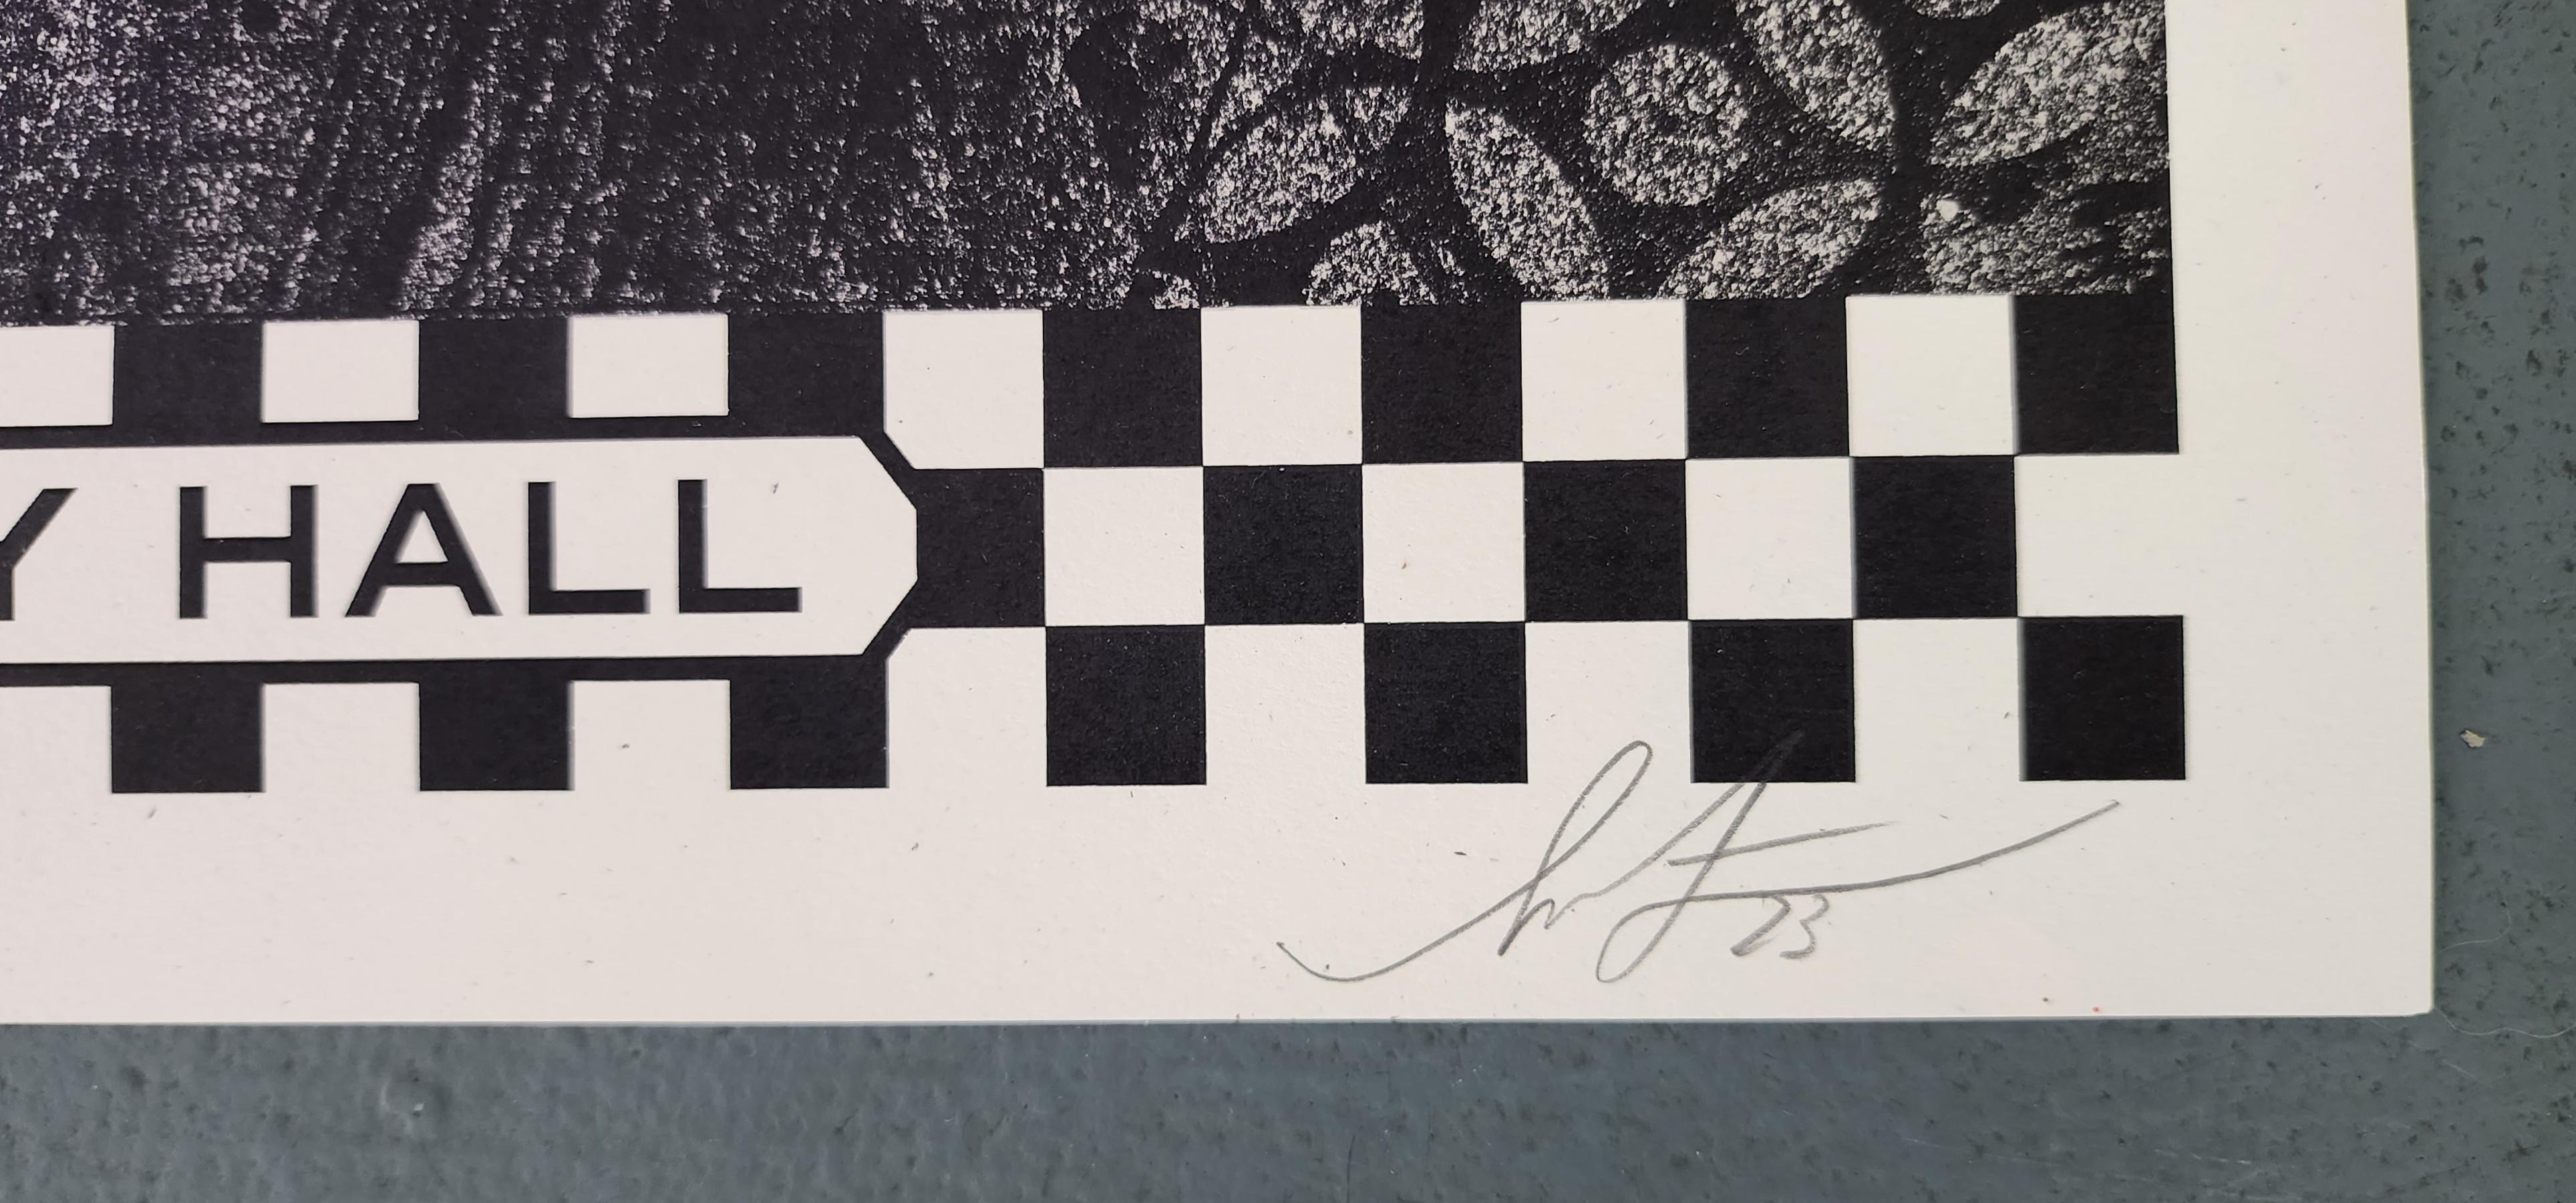 Shepard Fairey
Hommage à Terry Hall
Sérigraphie sur papier épais Trueing White Speckletone
Année : 2023
Taille : 24x18in
Edition : 325
Signé, daté et numéroté à la main 
L'ACO a fourni
Réf. : 924802-1929 

Tags : The Specials, Operation Ivy,